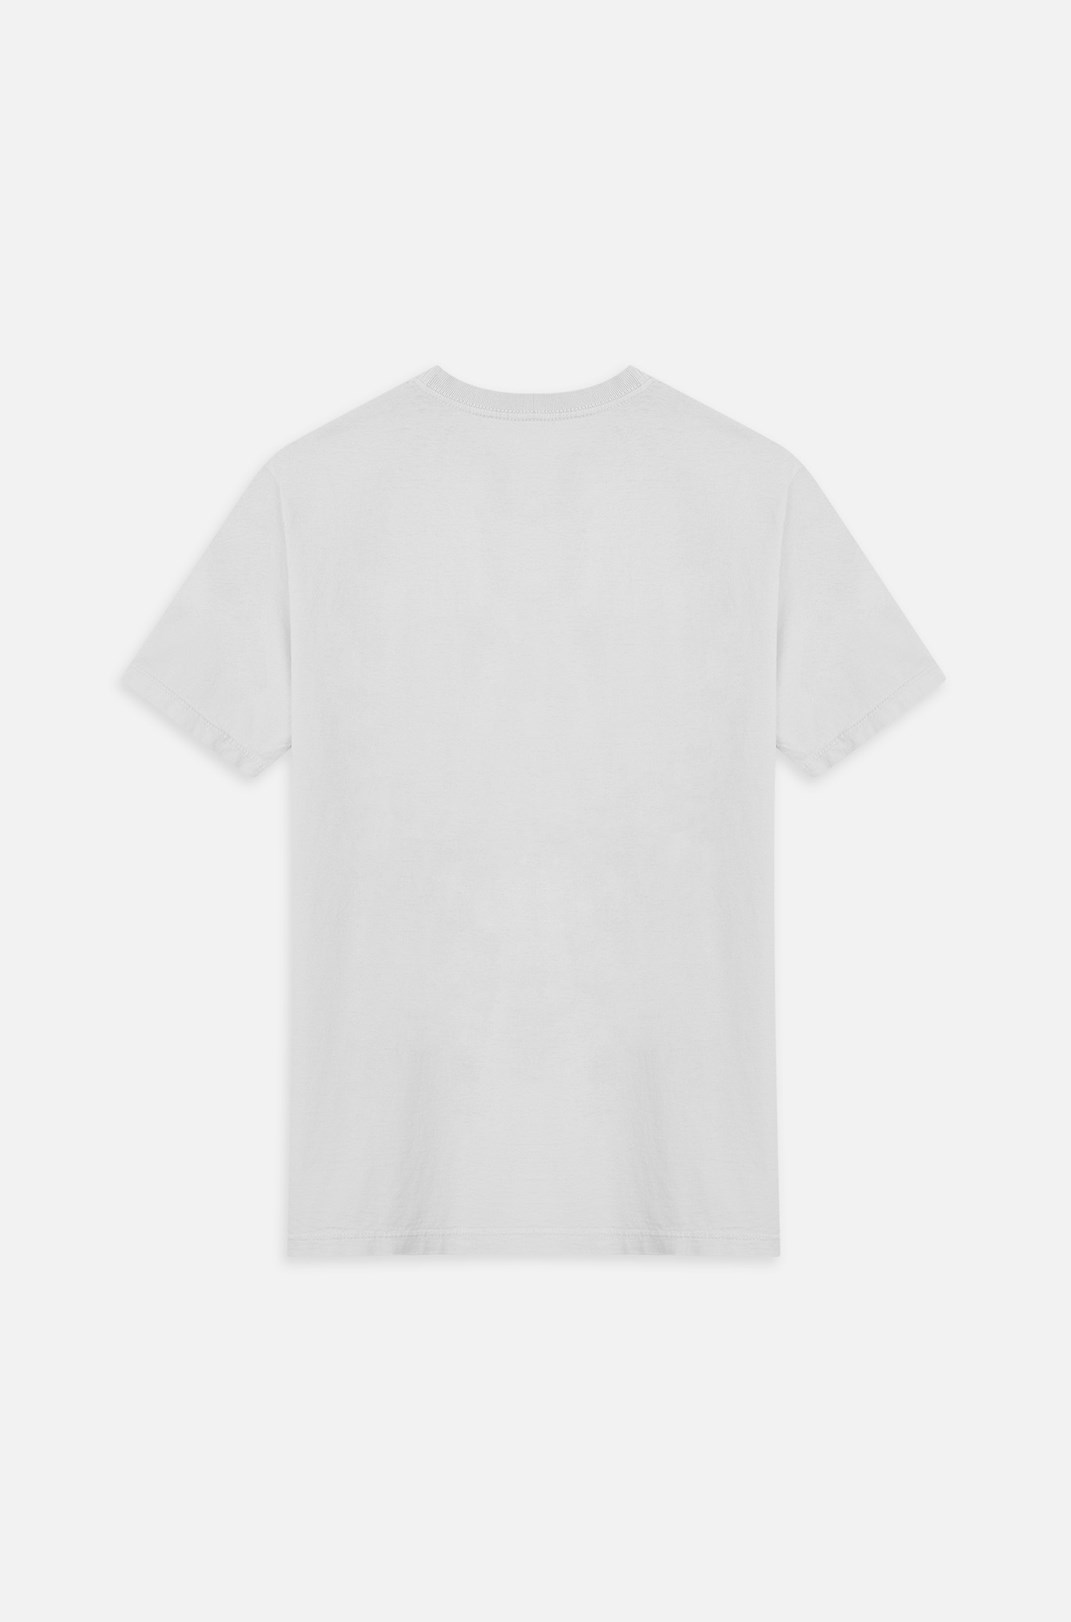 Camiseta Bold Approve Spare Off White E Preta